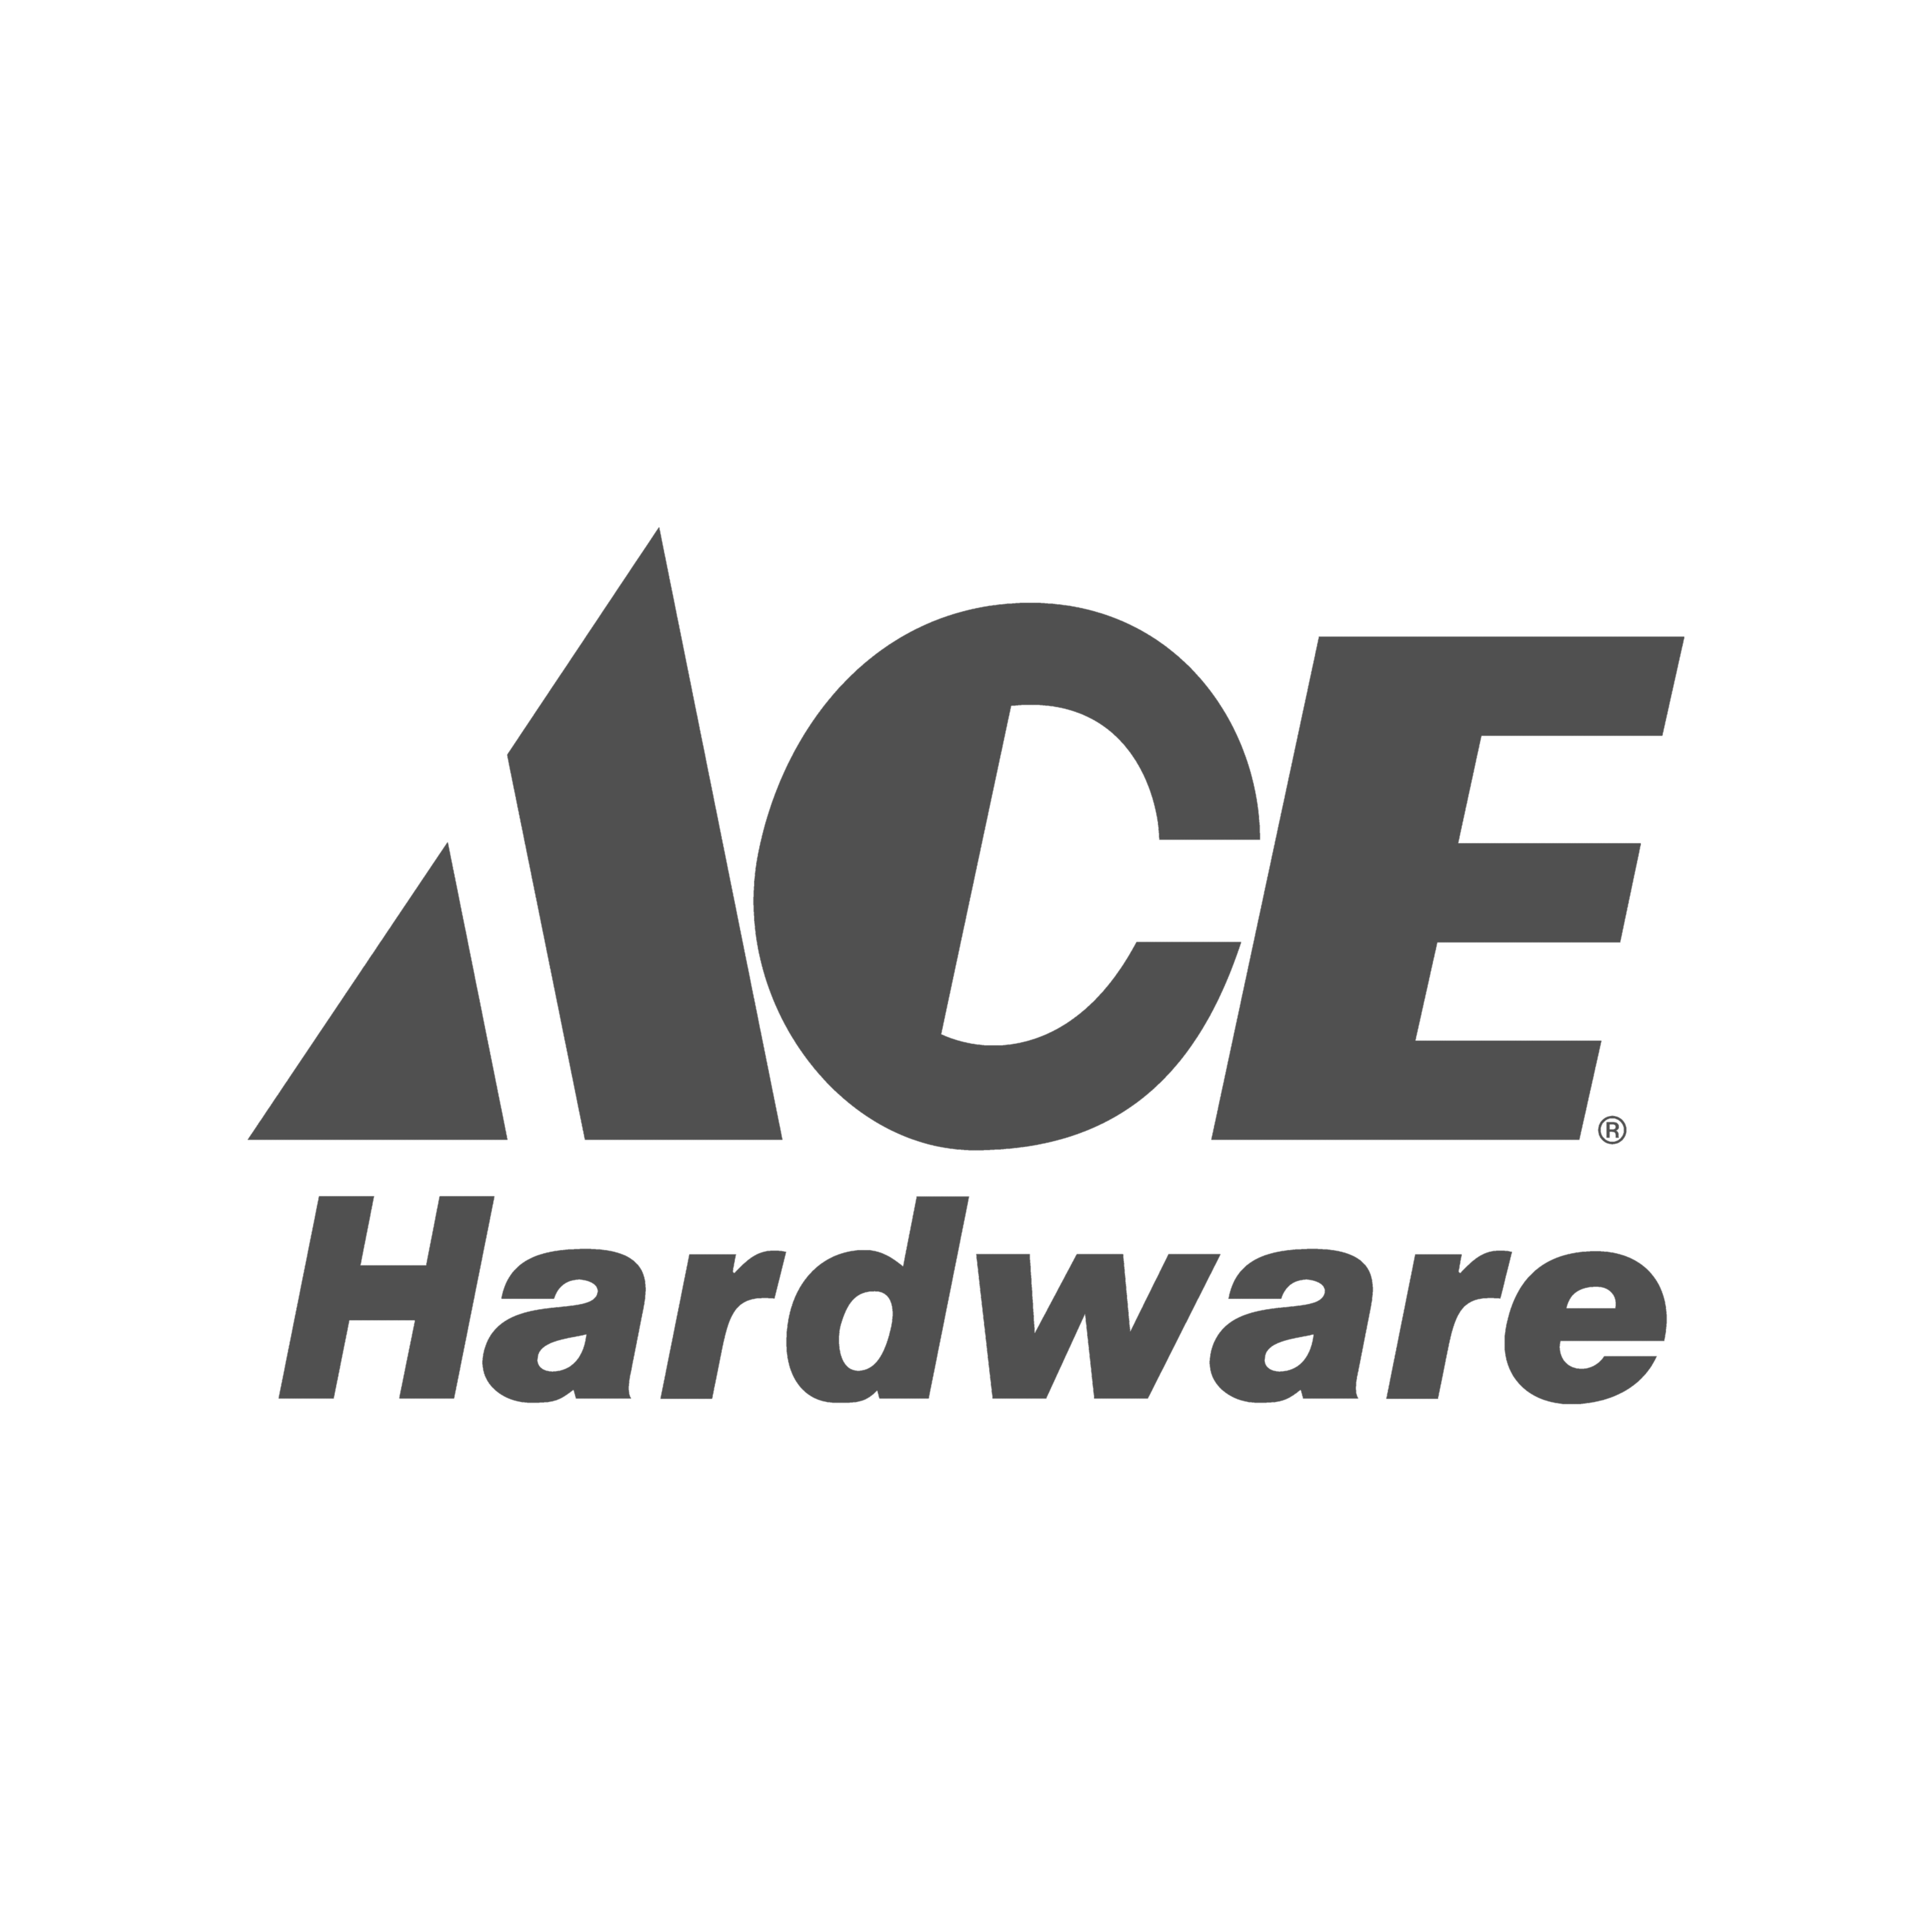 An ace hardware logo